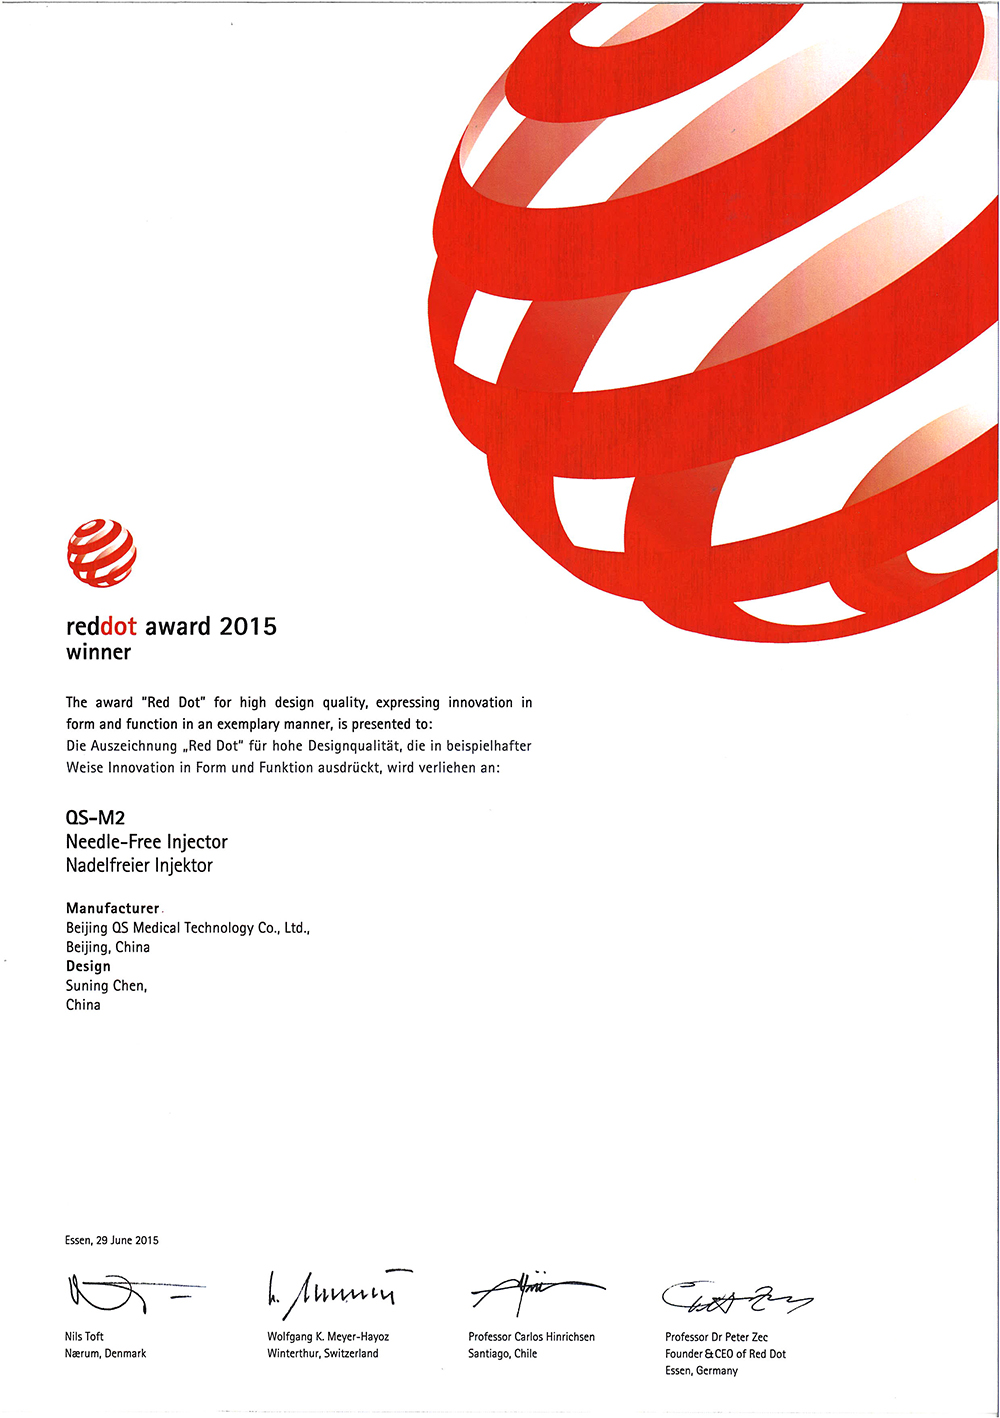 Nagroda Red Dot 2015 w Niemczech